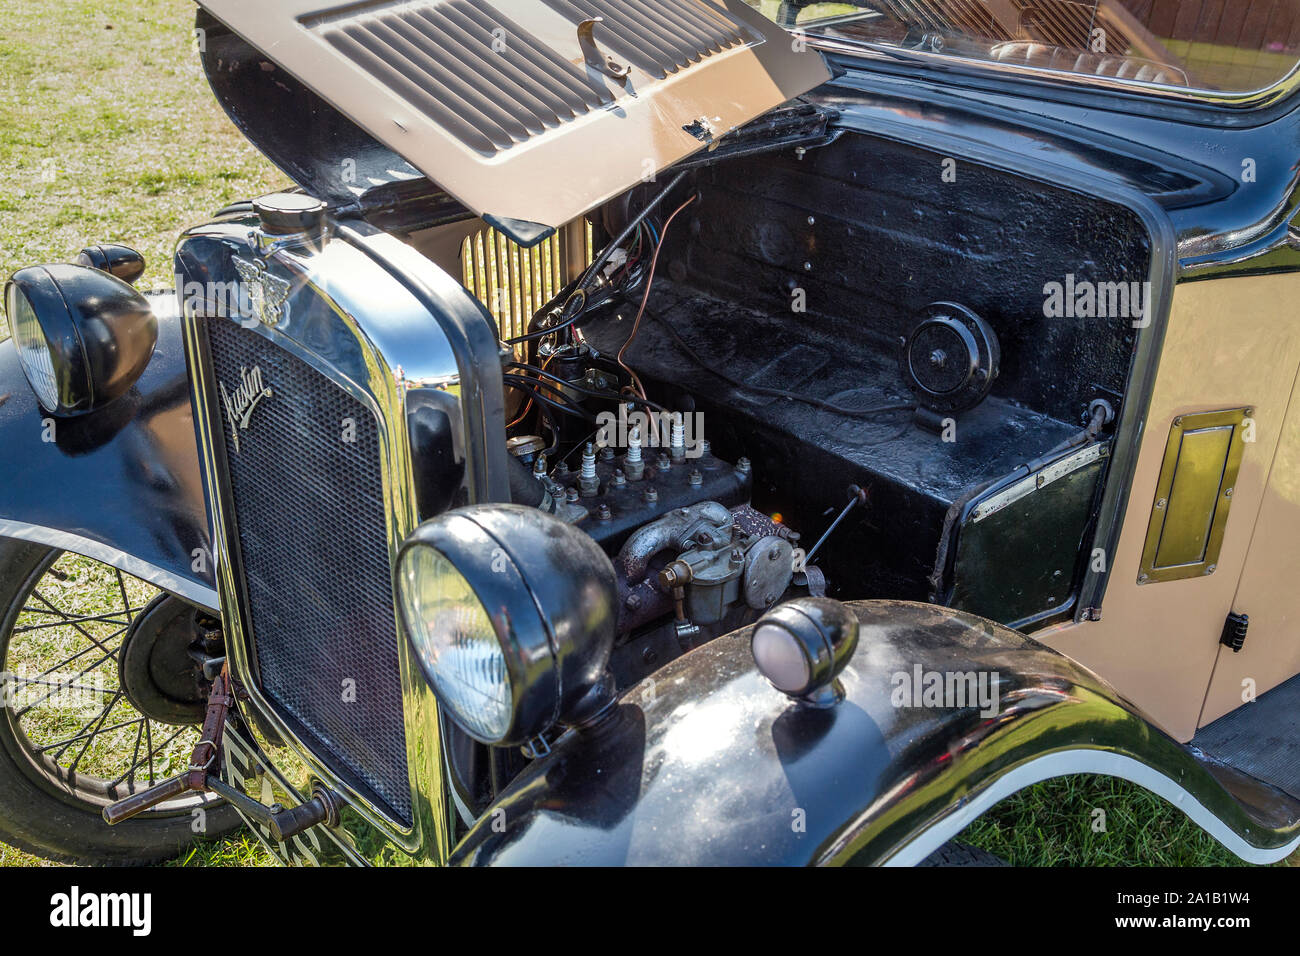 Détail d'un Austin Seven avec le capot levé révélant le compartiment moteur. Vintage et classic car show Belbroughton, UK. Banque D'Images